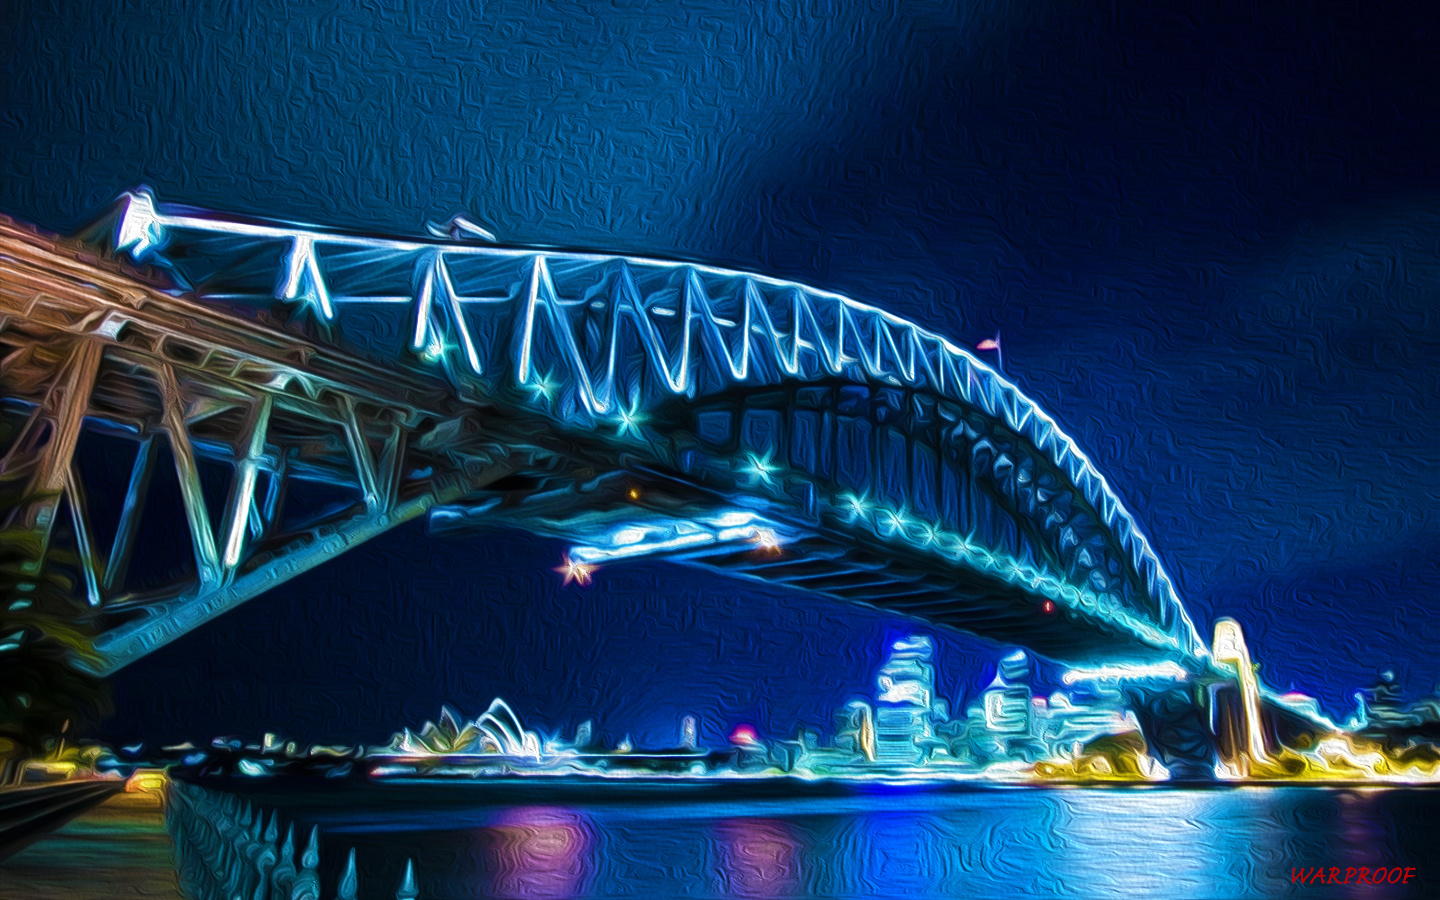 Скачать картинку Сиднейский Мост Харбор Бридж, Мосты, Сделано Человеком в телефон бесплатно.